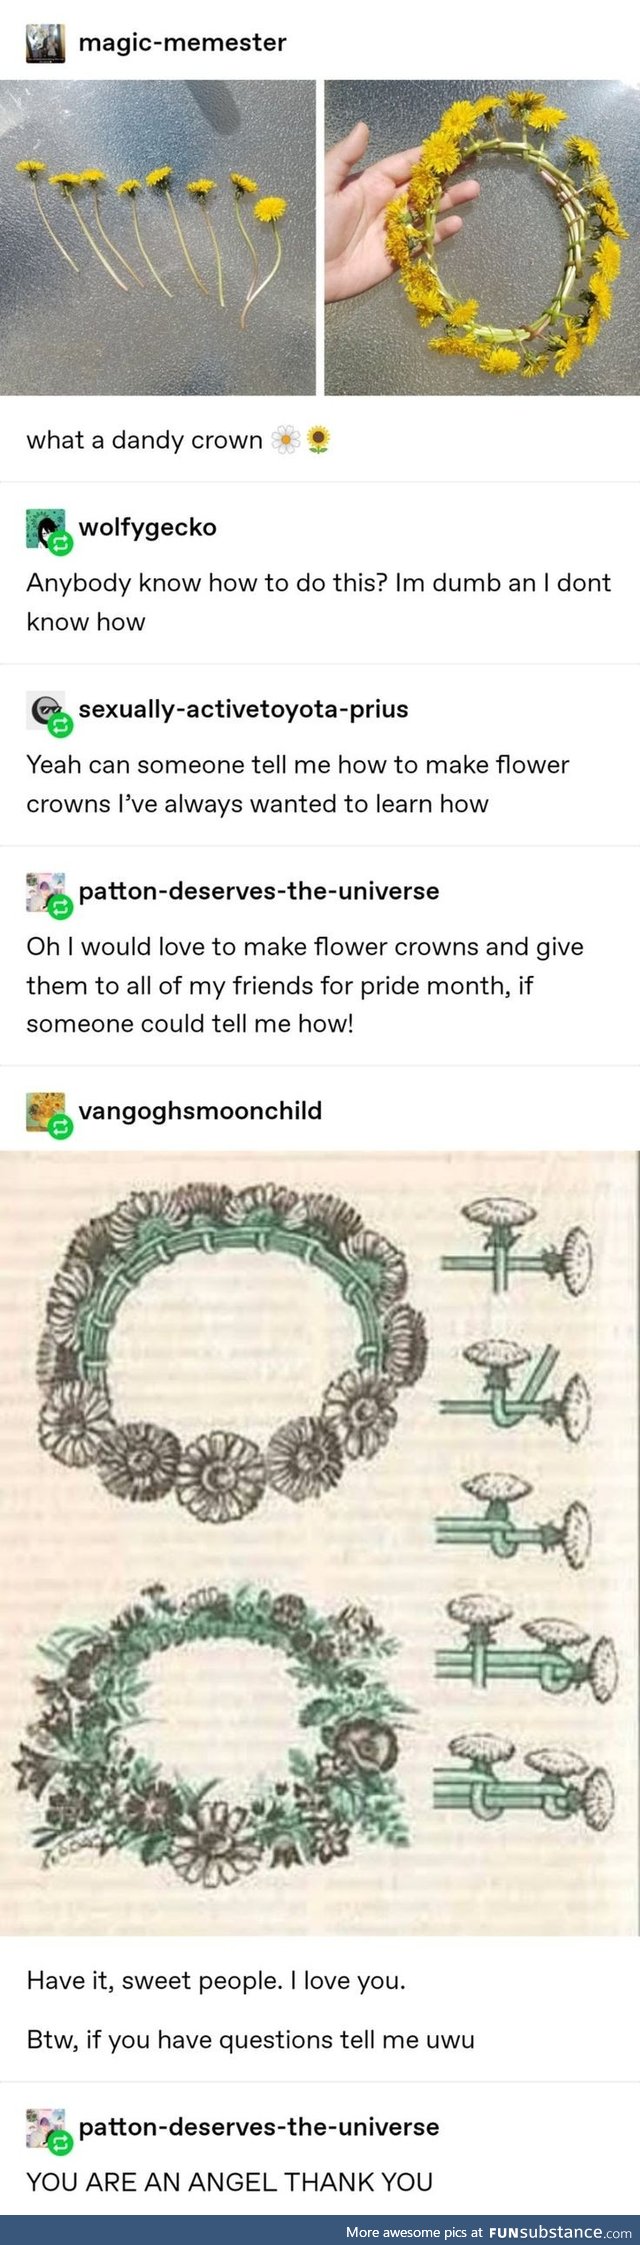 Flower crowns